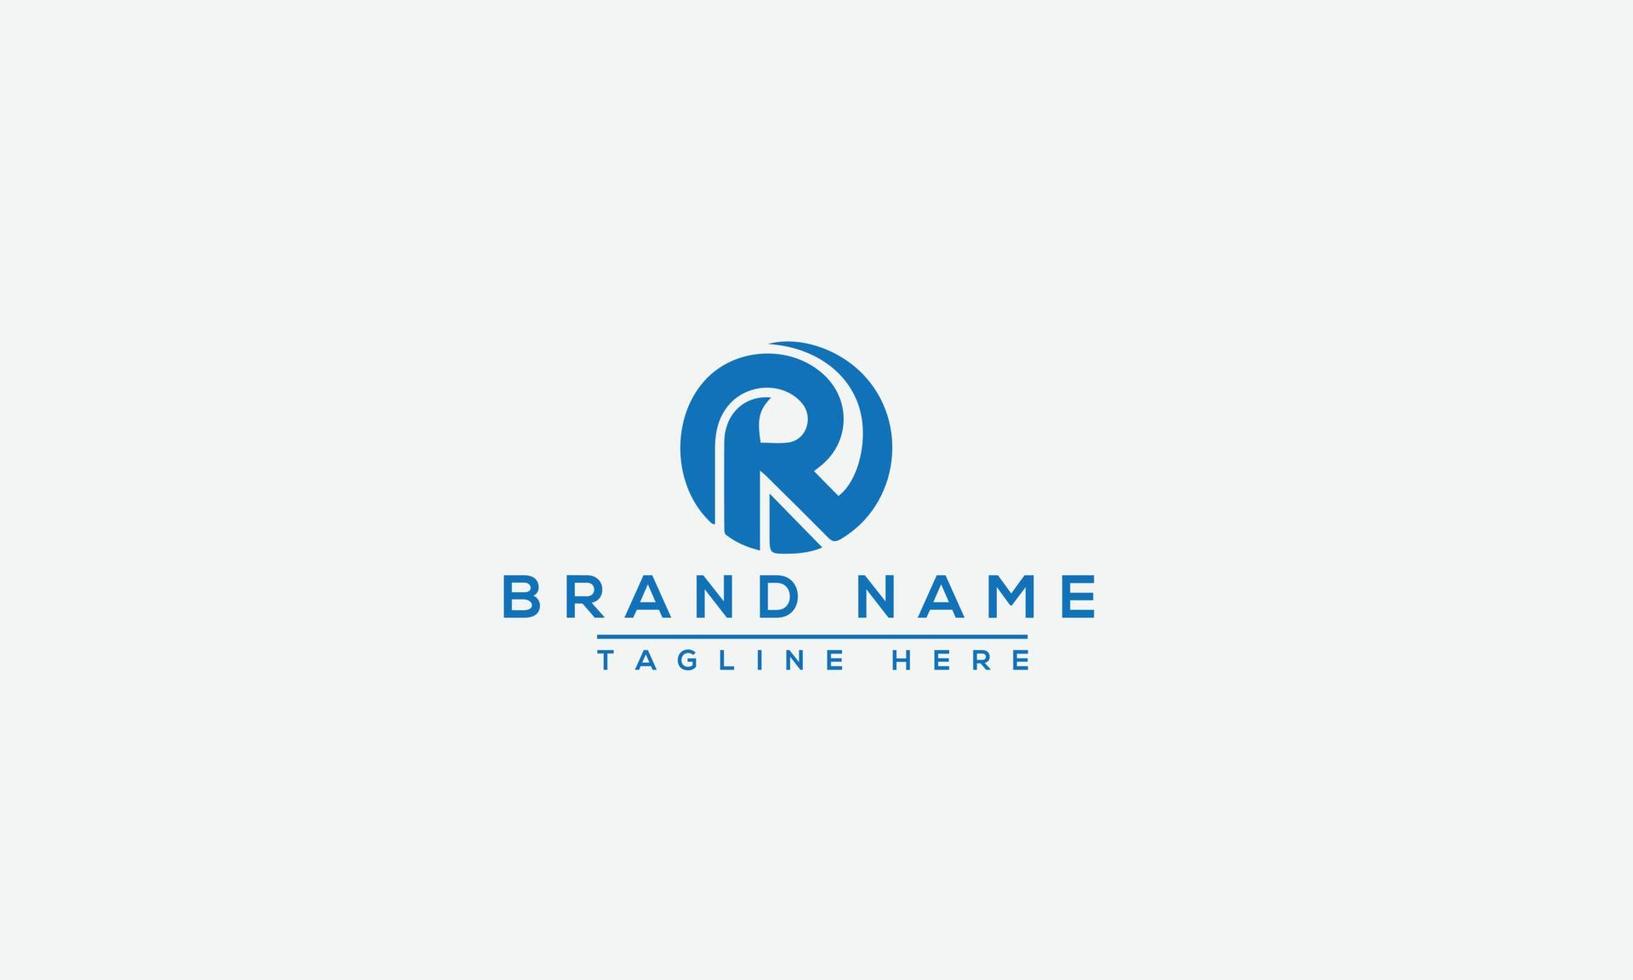 elemento de marca gráfico vectorial de plantilla de diseño de logotipo r vector